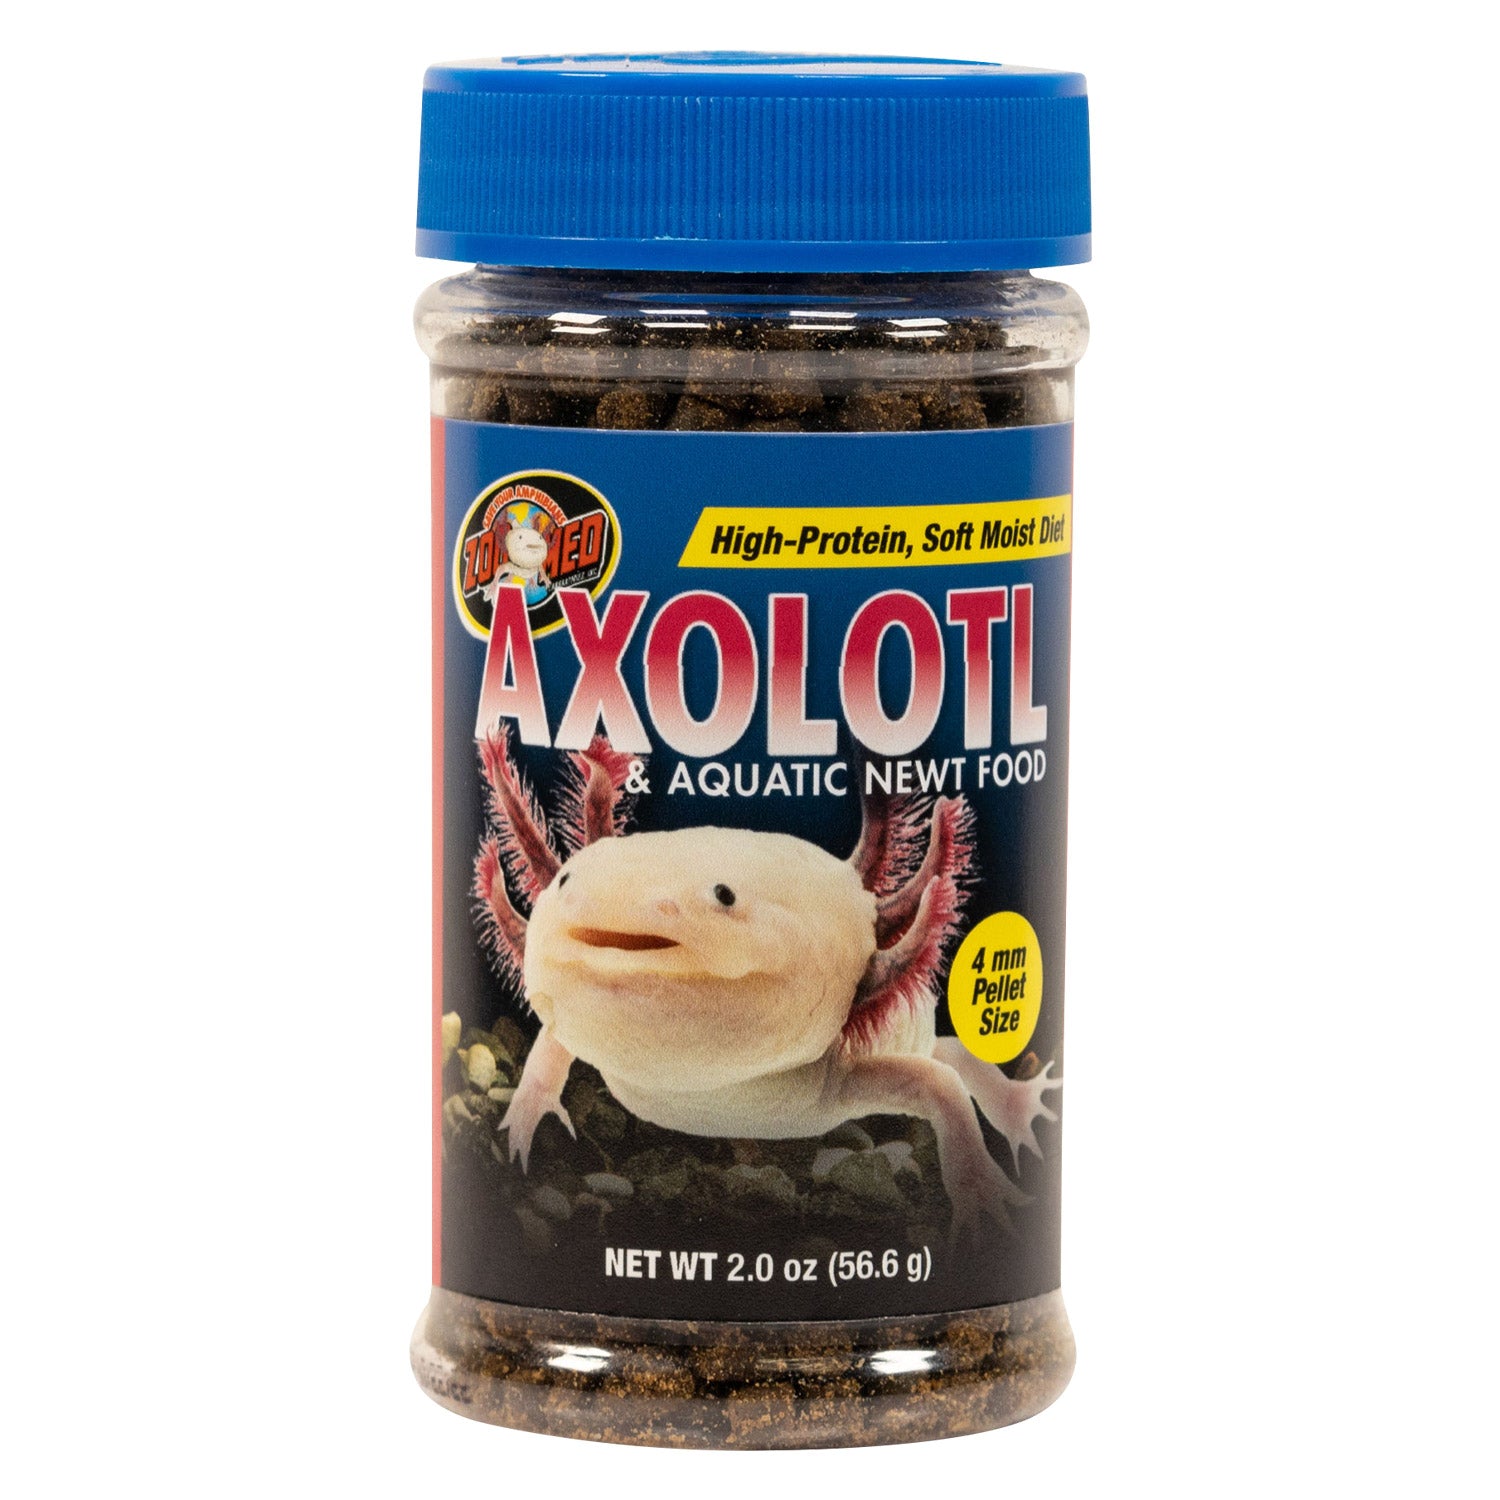 Axolotl & Aquatic Newt Food